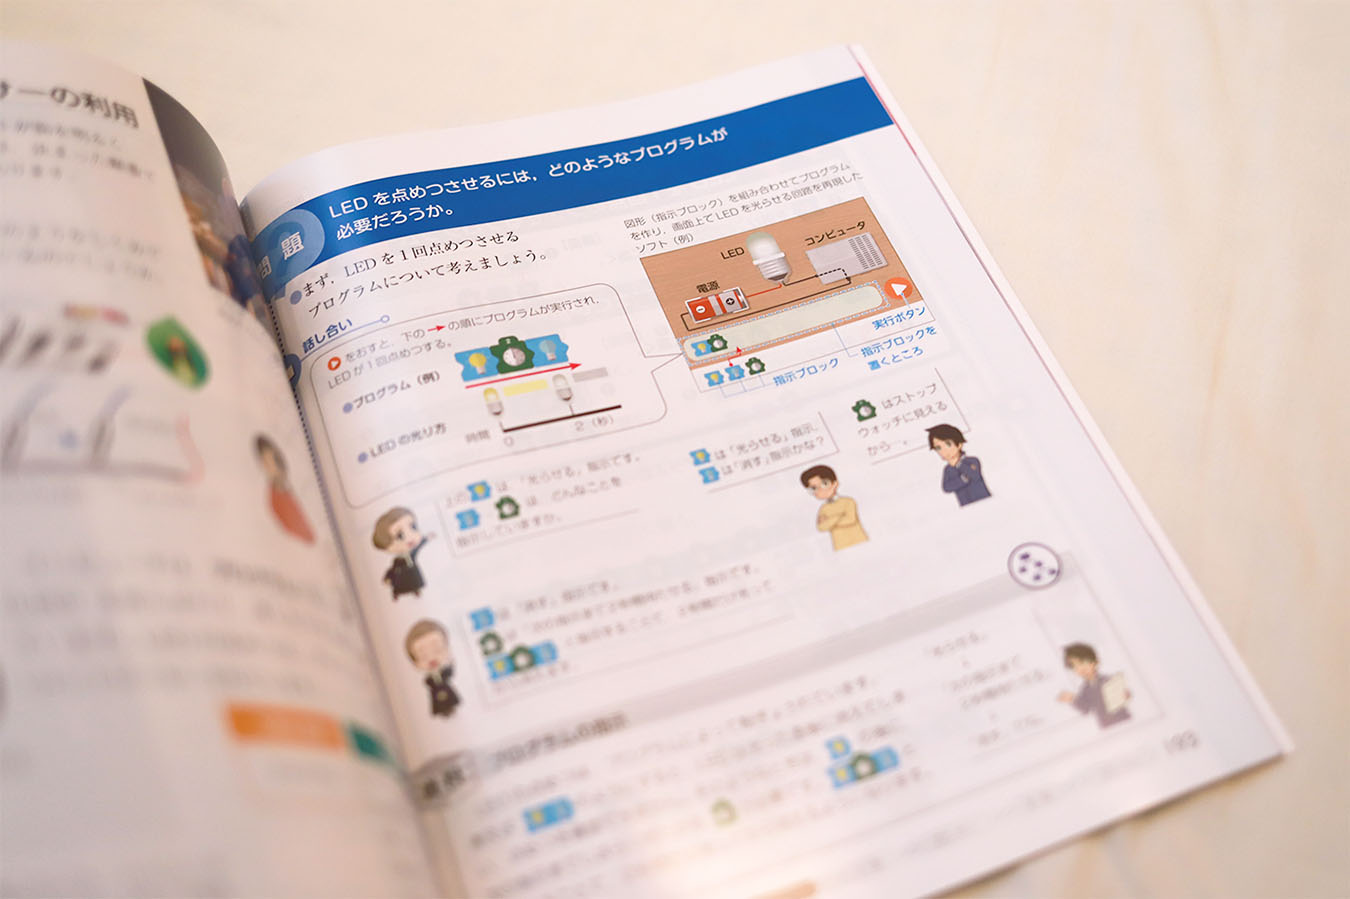 プログラミング教育アプリ『よこ式』が小学校教科書に掲載されました